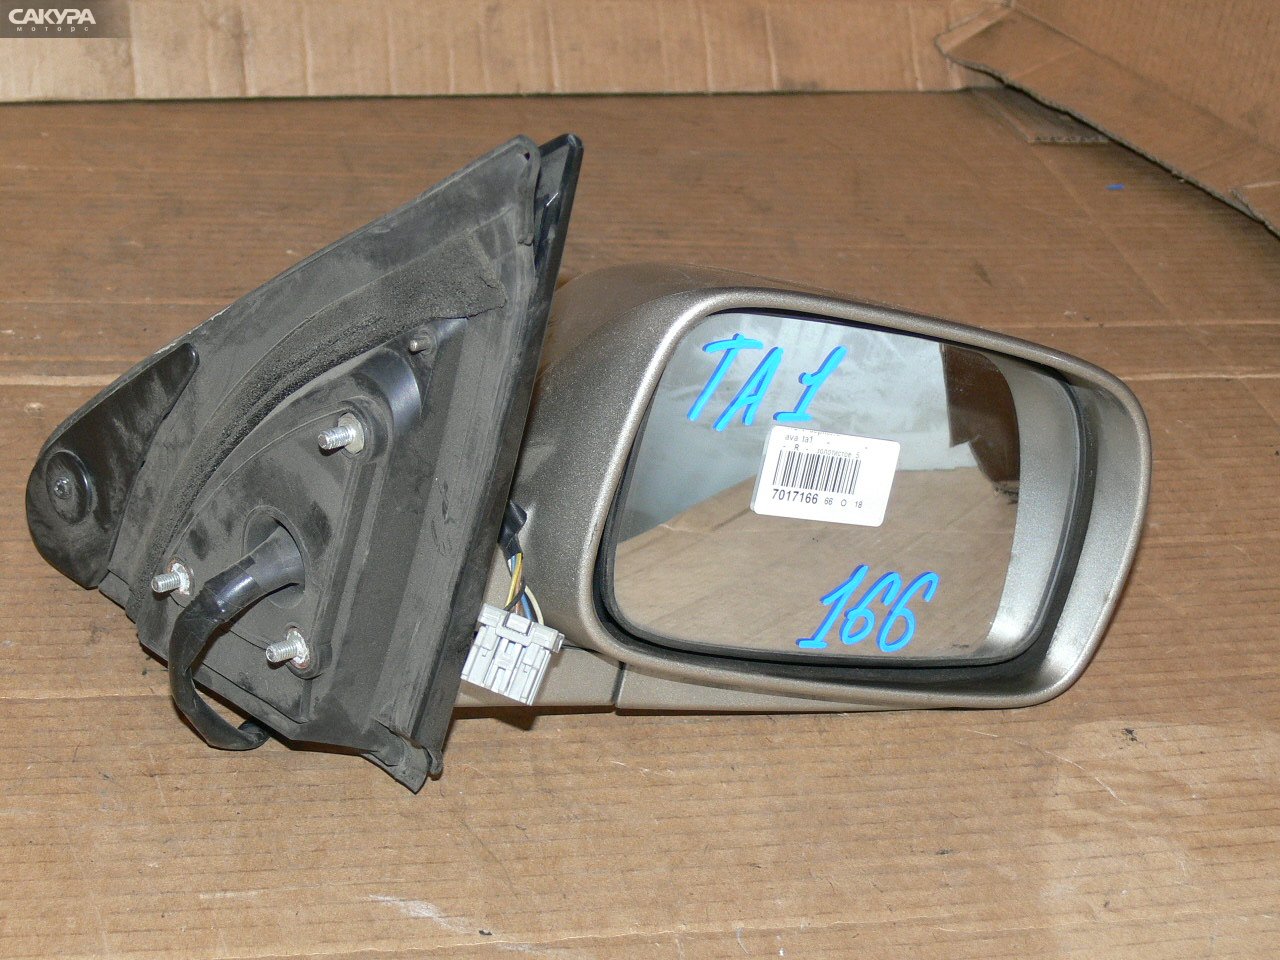 Зеркало боковое правое Honda Avancier TA1: купить в Сакура Иркутск.